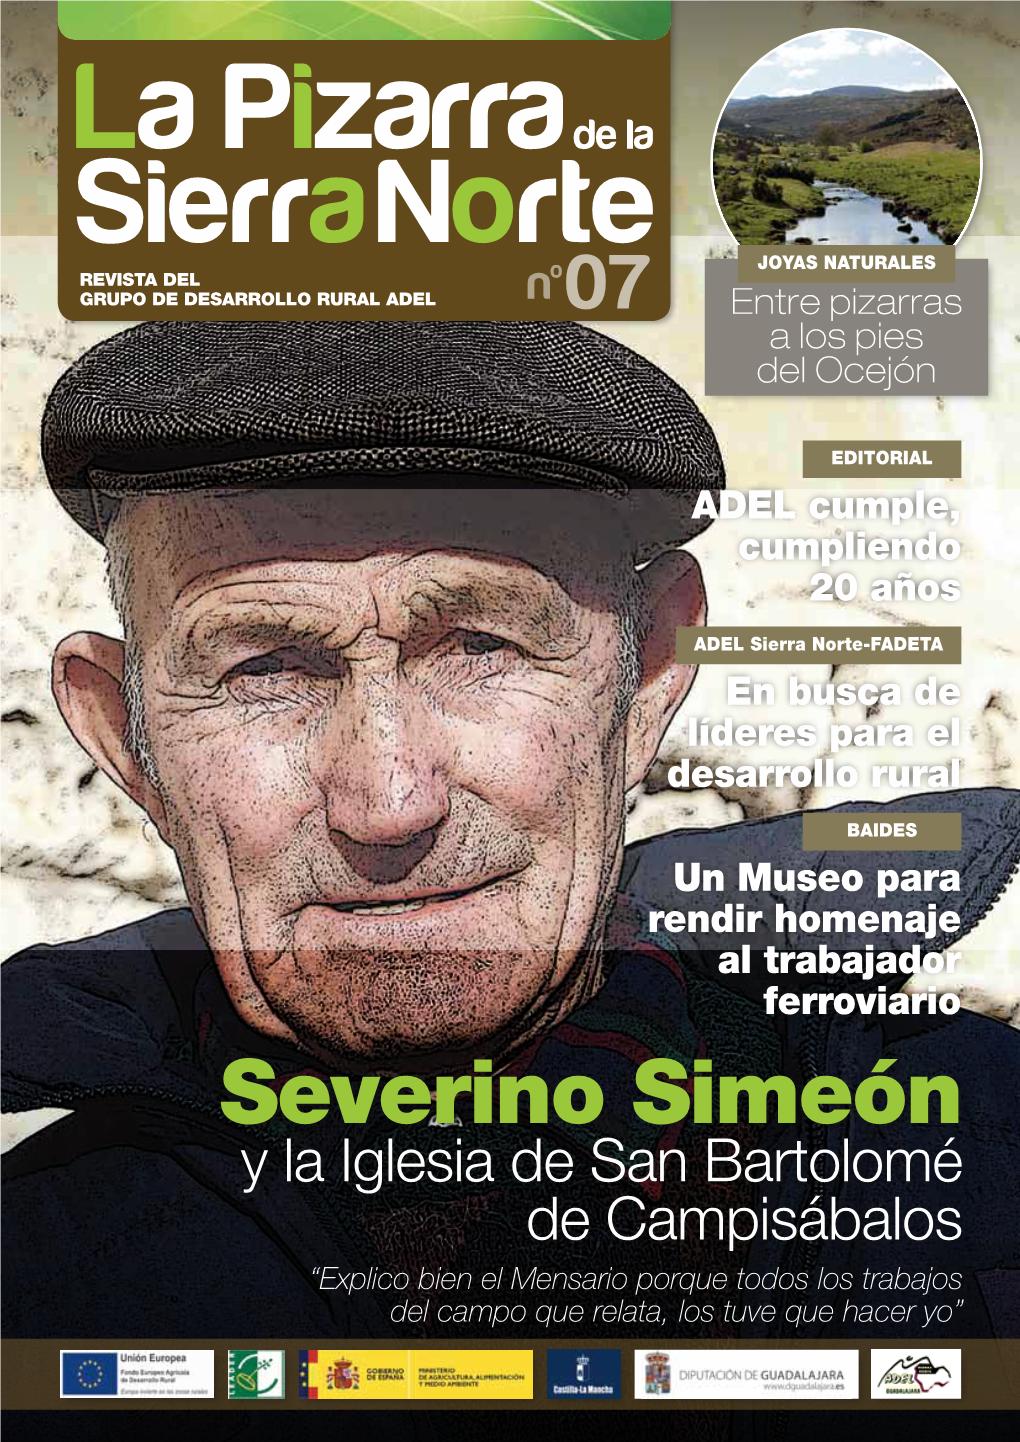 Severino Simeón